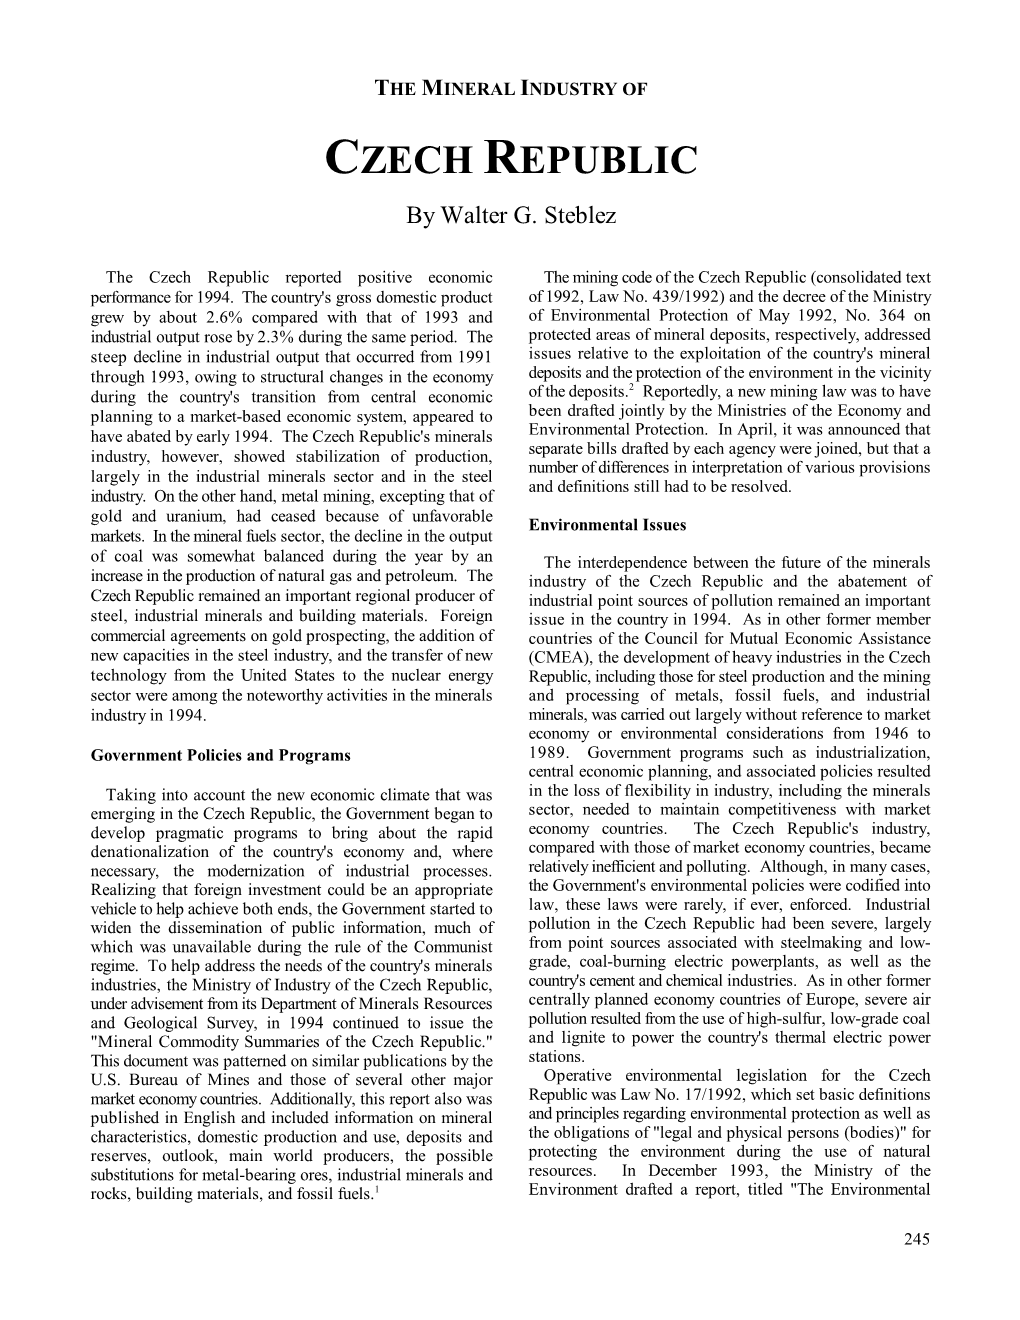 CZECH REPUBLIC by Walter G